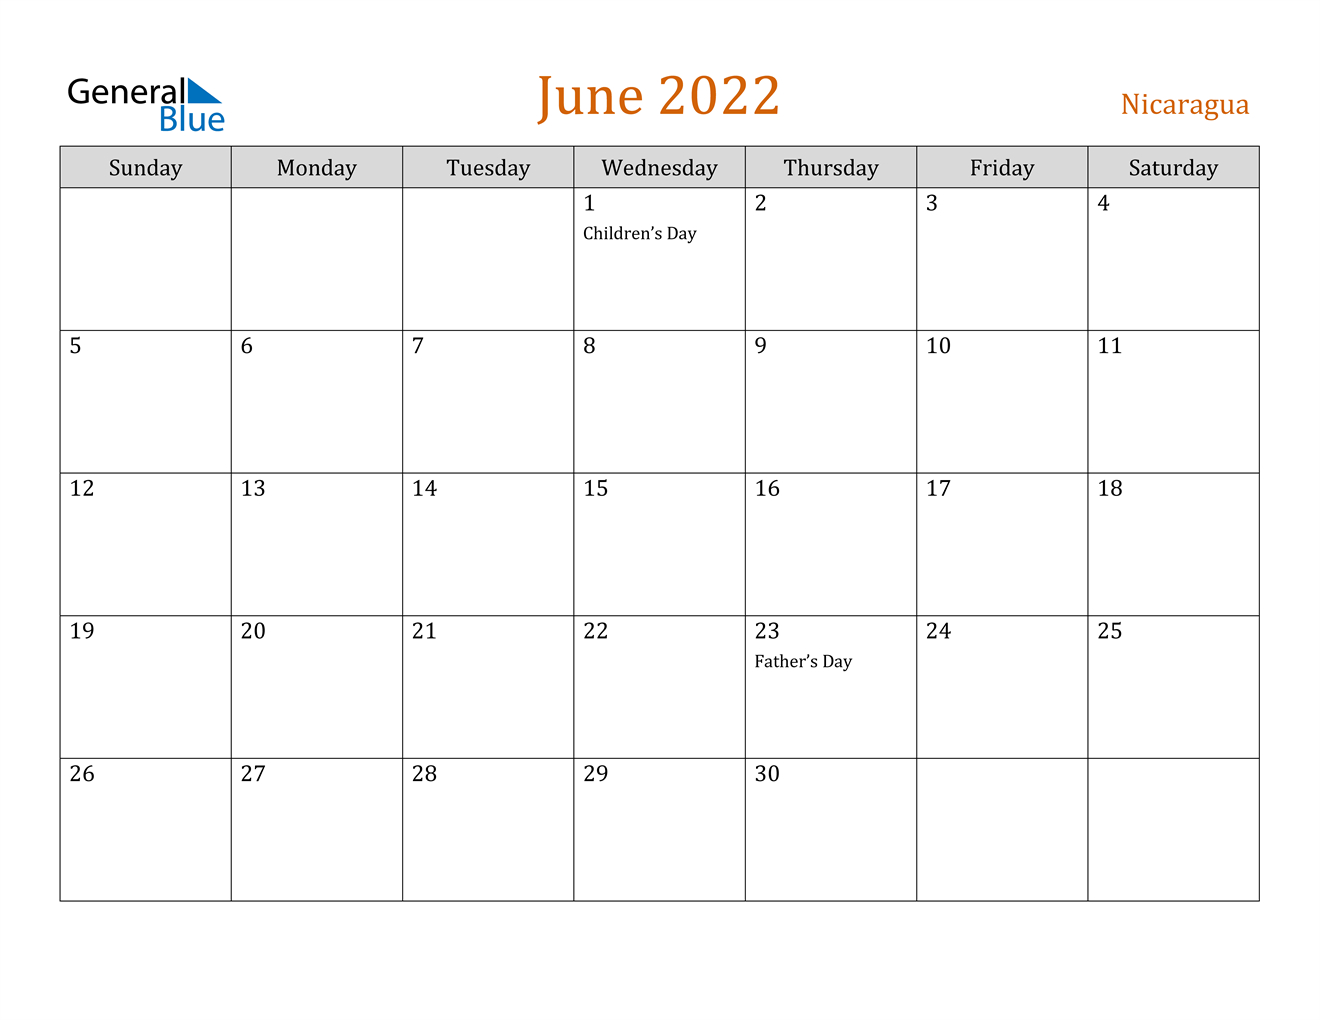 June 2022 Calendar - Nicaragua